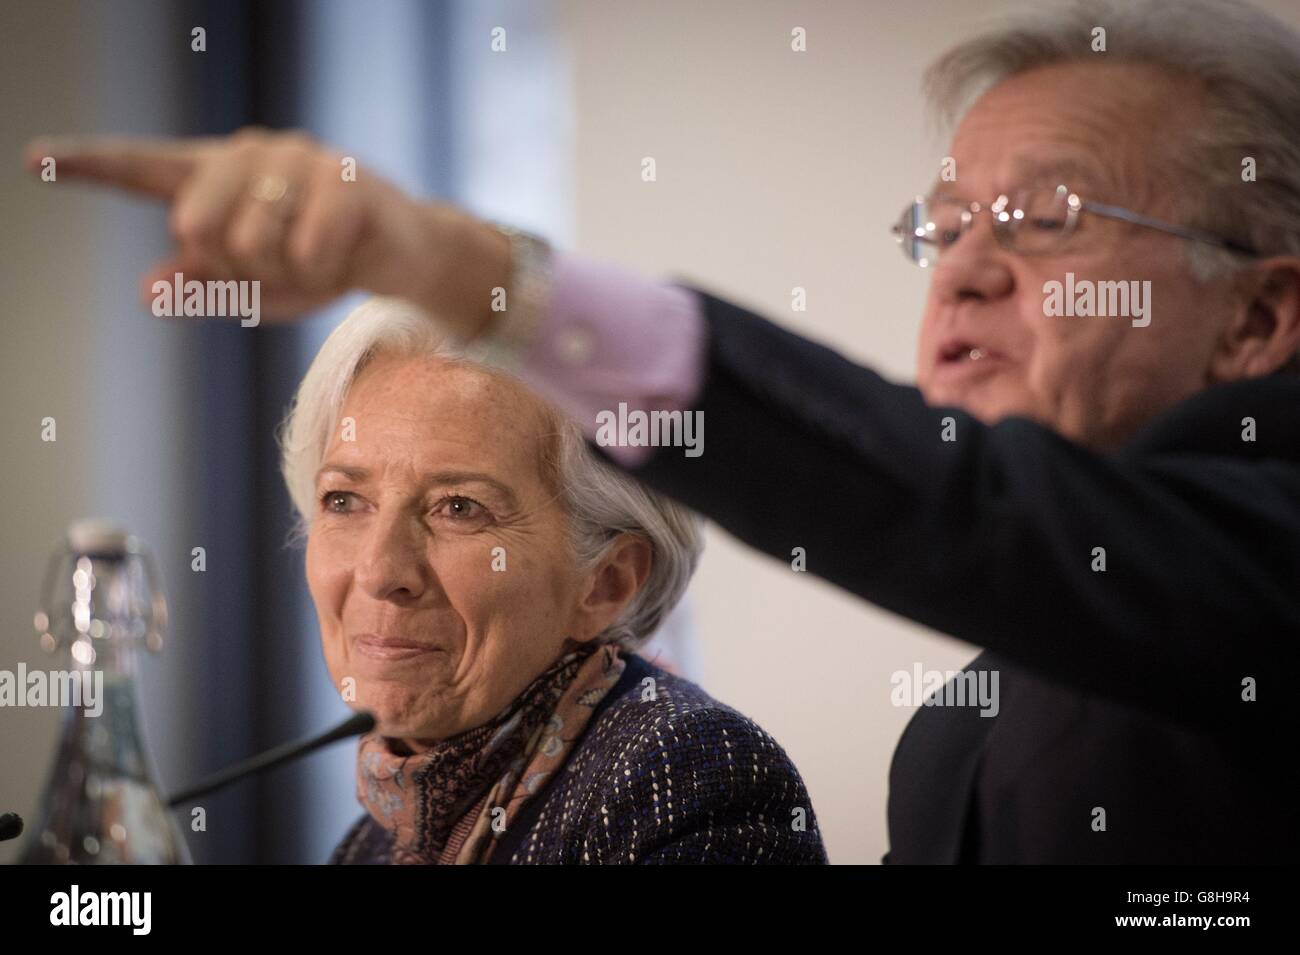 Christine Lagarde, Directora Gerente del Fondo Monetario Internacional, habla en una conferencia de prensa en el Tesoro de Londres, con Gerry Rice, colega del FMI, donde presentó la declaración final de la consulta del Artículo IV del FMI 2015 con el Ministerio de Hacienda del Reino Unido. Asistió el canciller del Tesoro George Osborne. Foto de stock